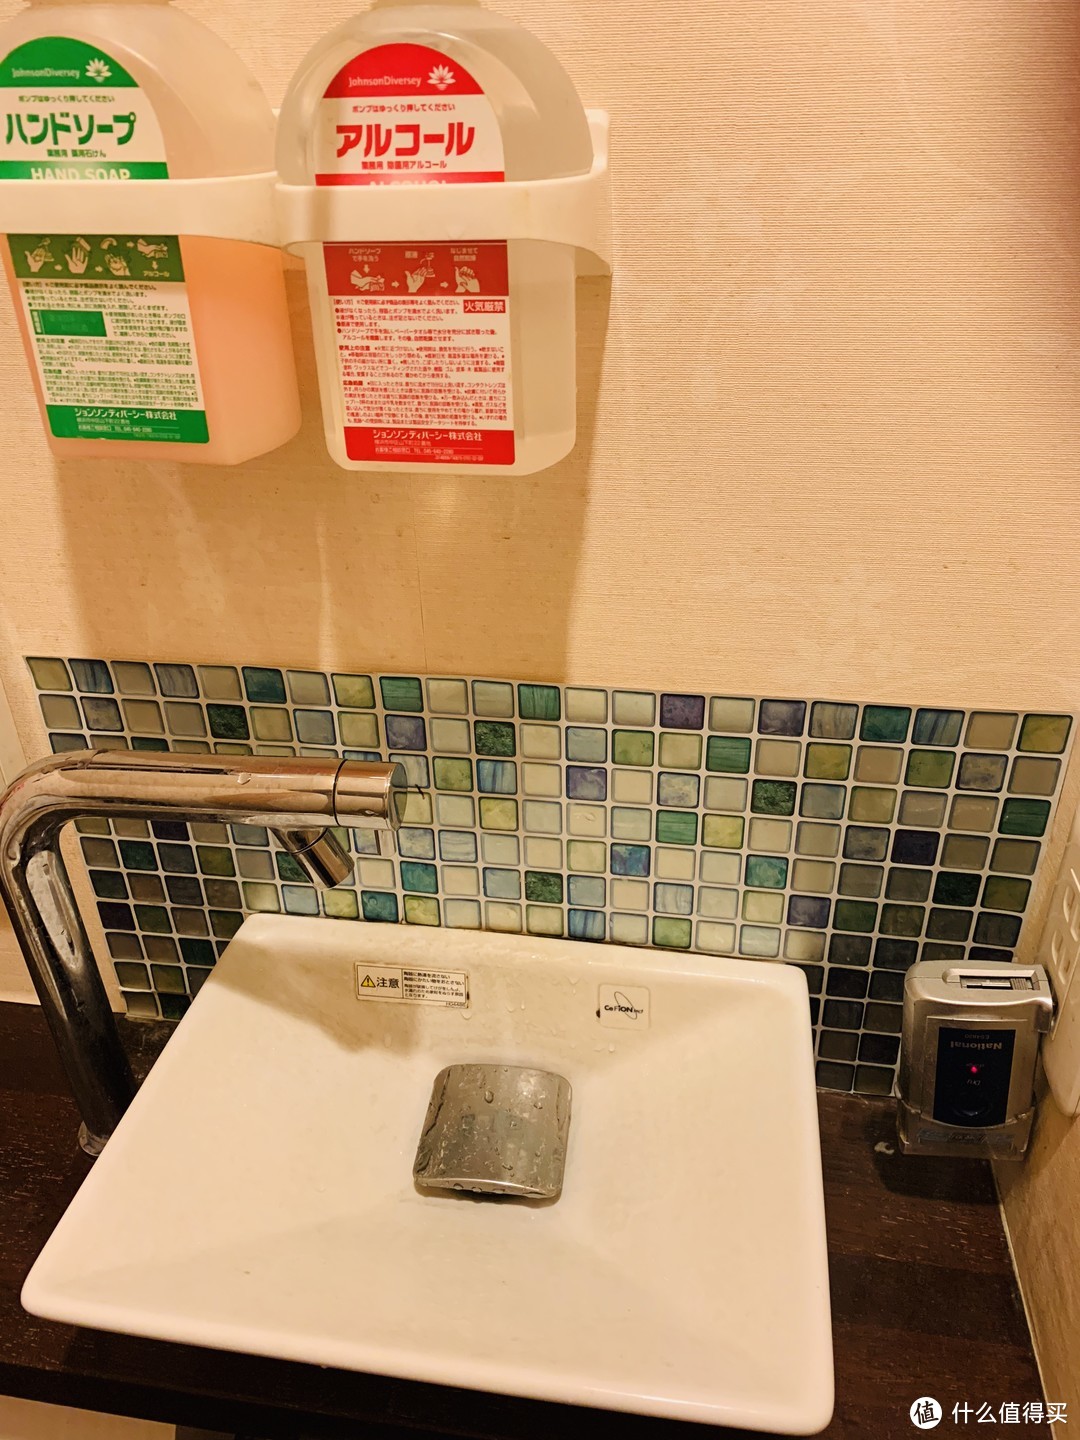 绿色的是洗手液，红色的是酒精消毒液，居然还配备了供客人应急用的剃须刀